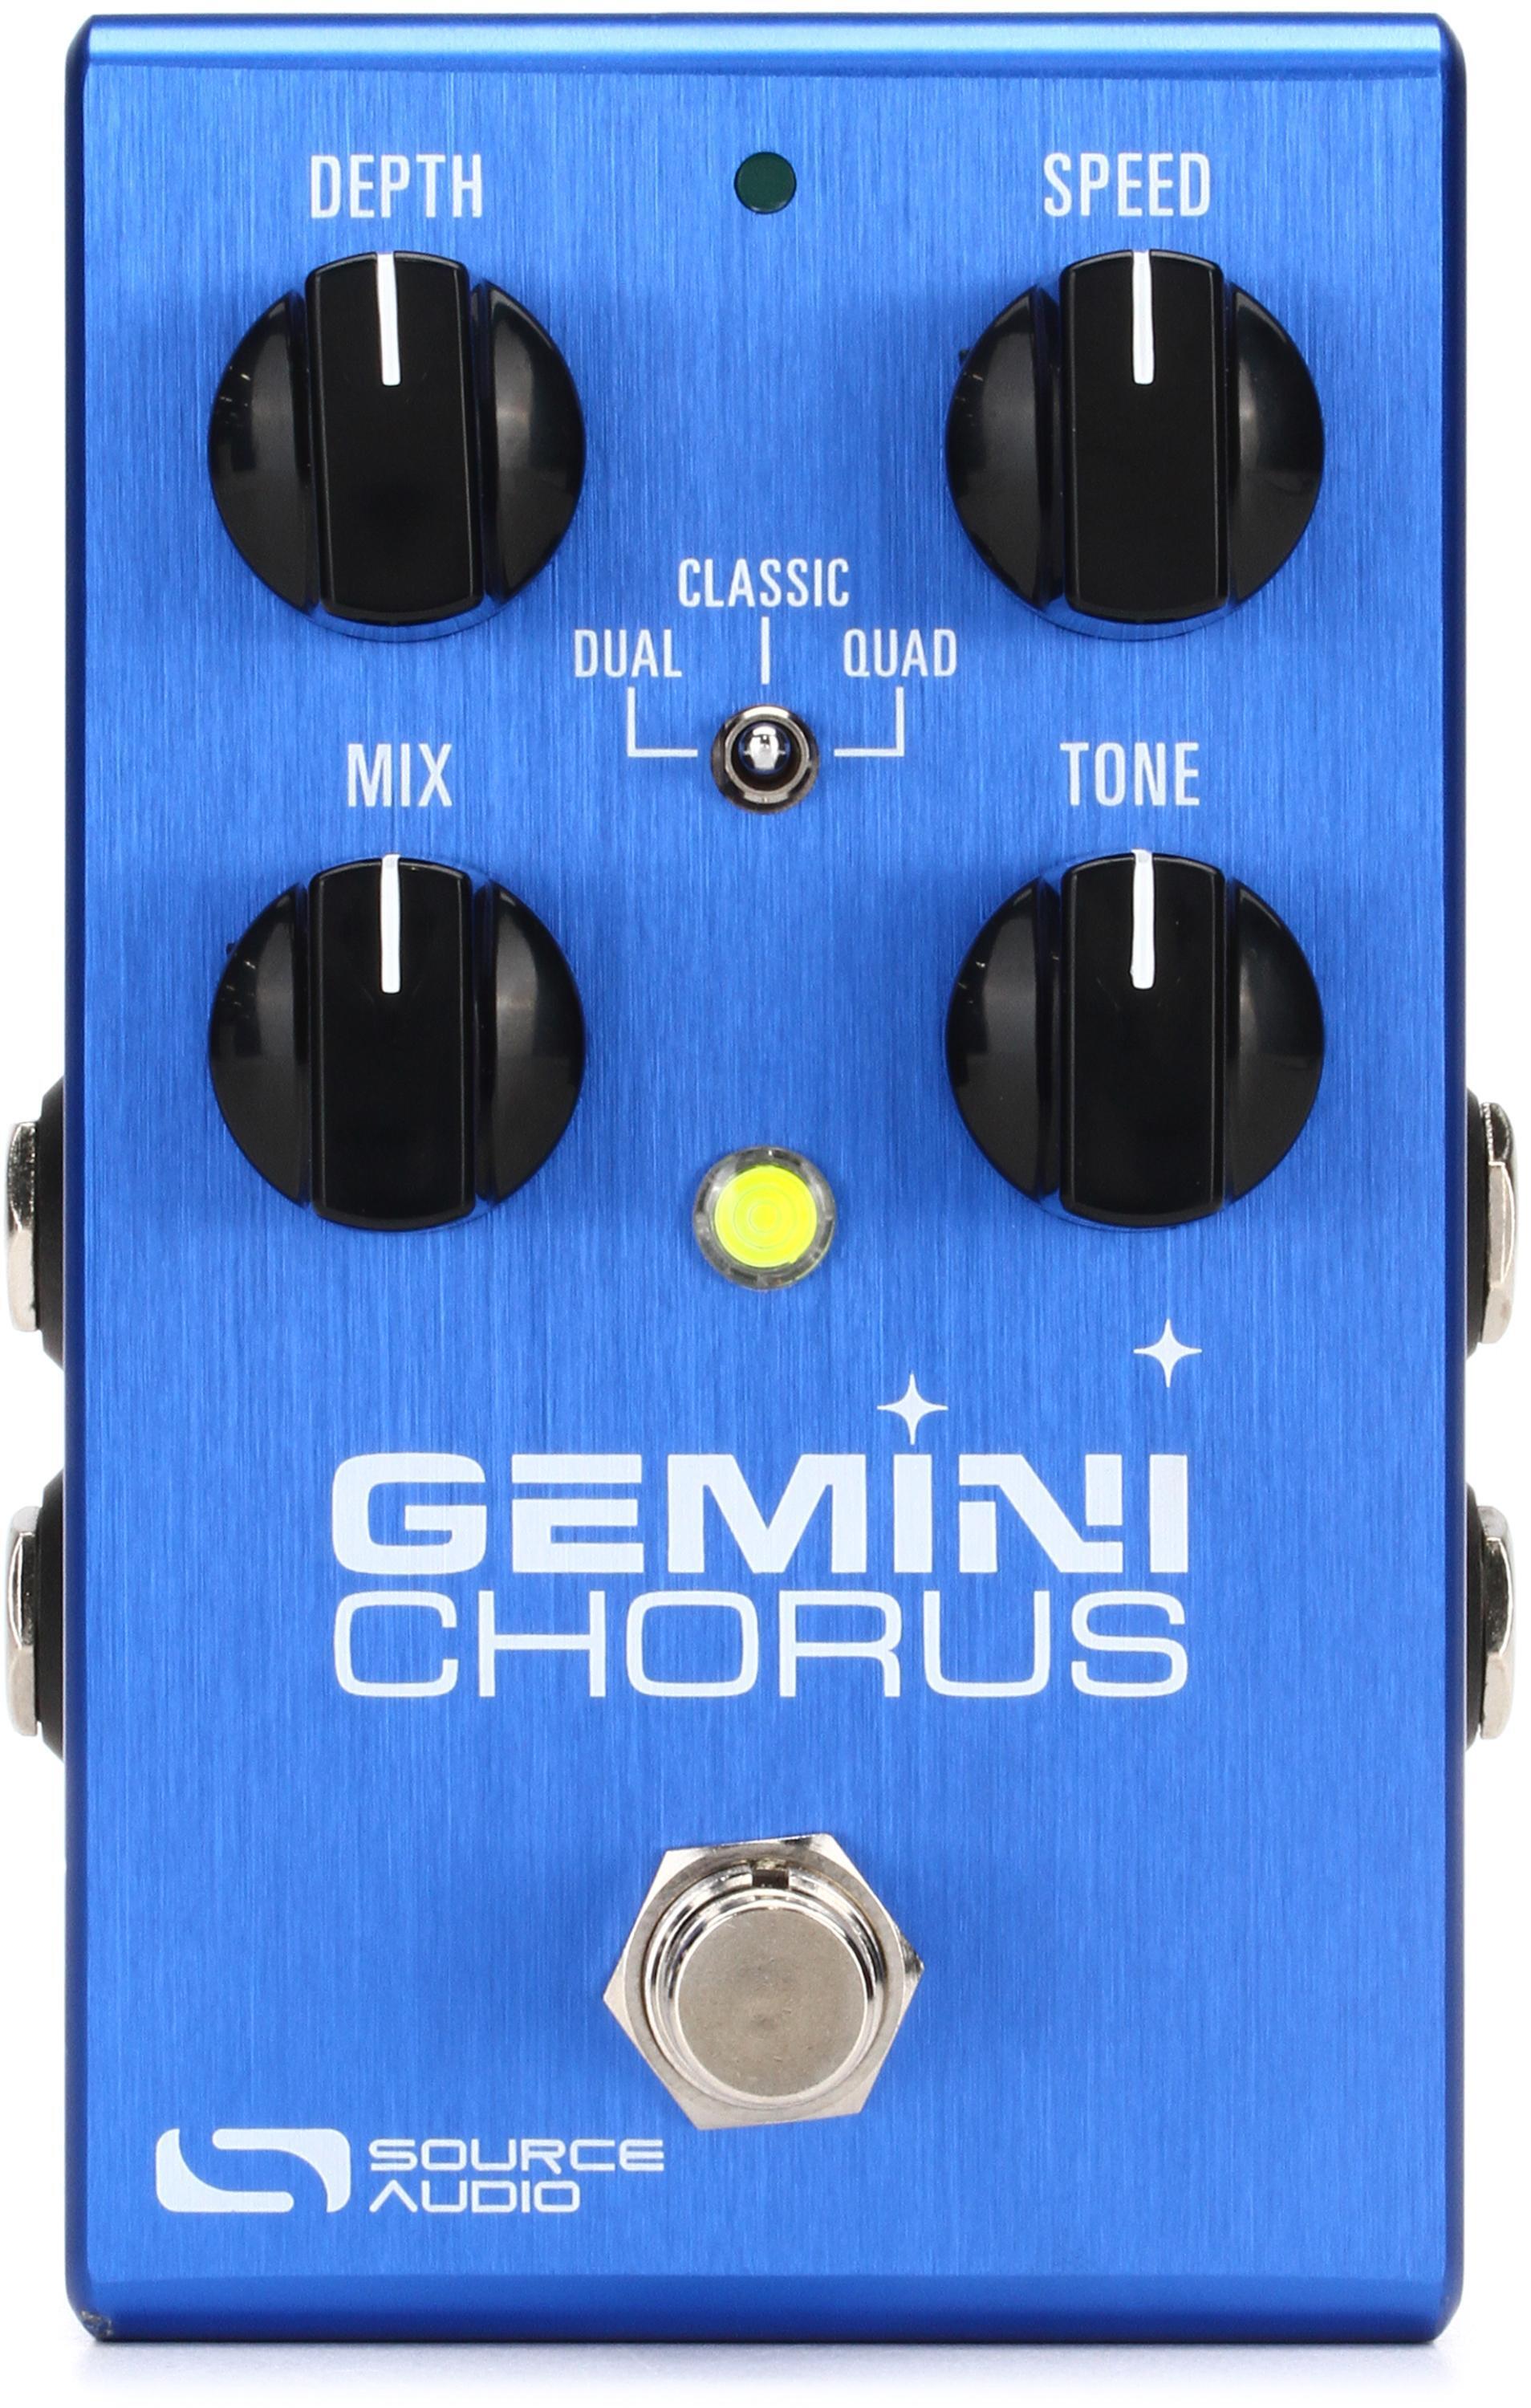 Source Audio Gemini Chorus Pedal